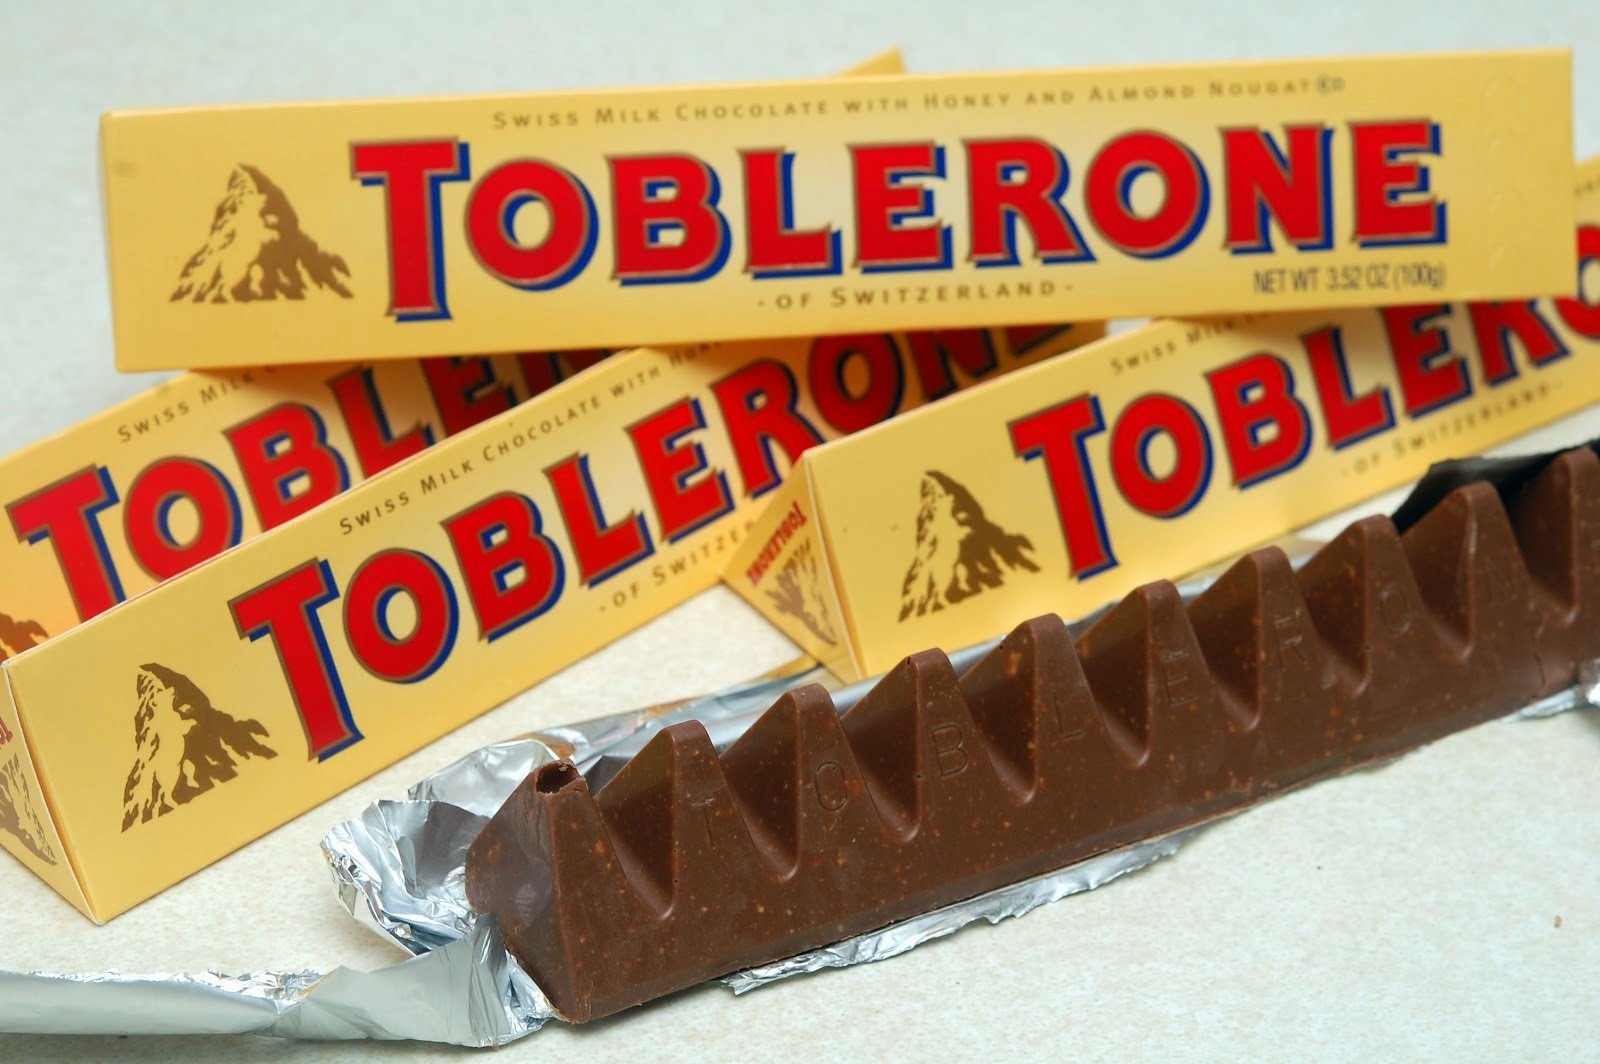 Шоколад toblerone купить. Шоколад швейцарский Toblerone. Шоколад треугольный Тоблерон. Шоколад пирамидками Toblerone. Финский шоколад Toblerone.